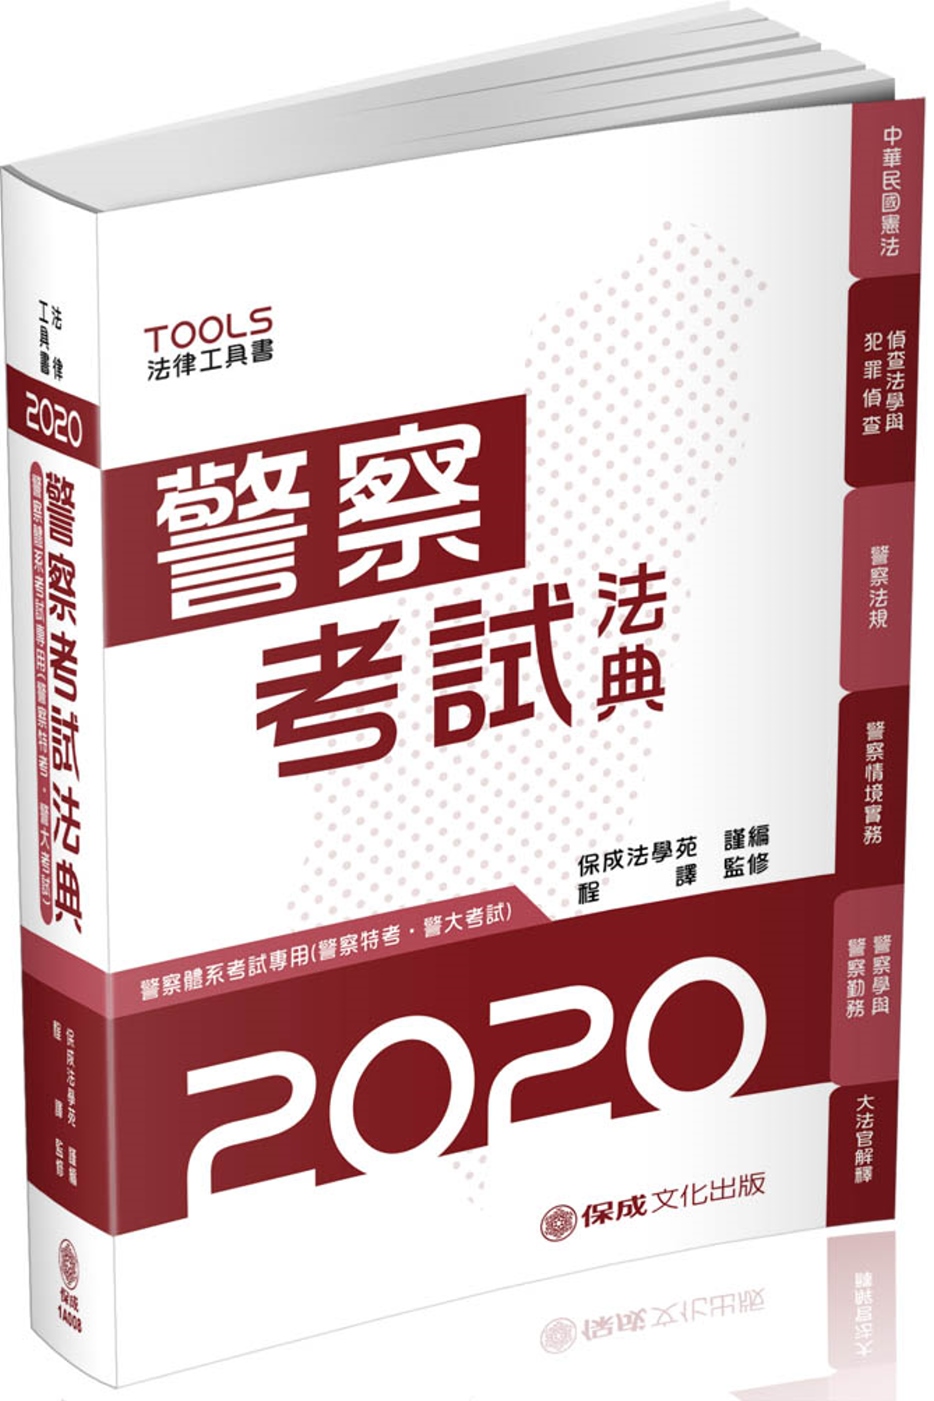 警察考試法典 警察特考 警大考試 2020法律法典工具書(保成)(15版)